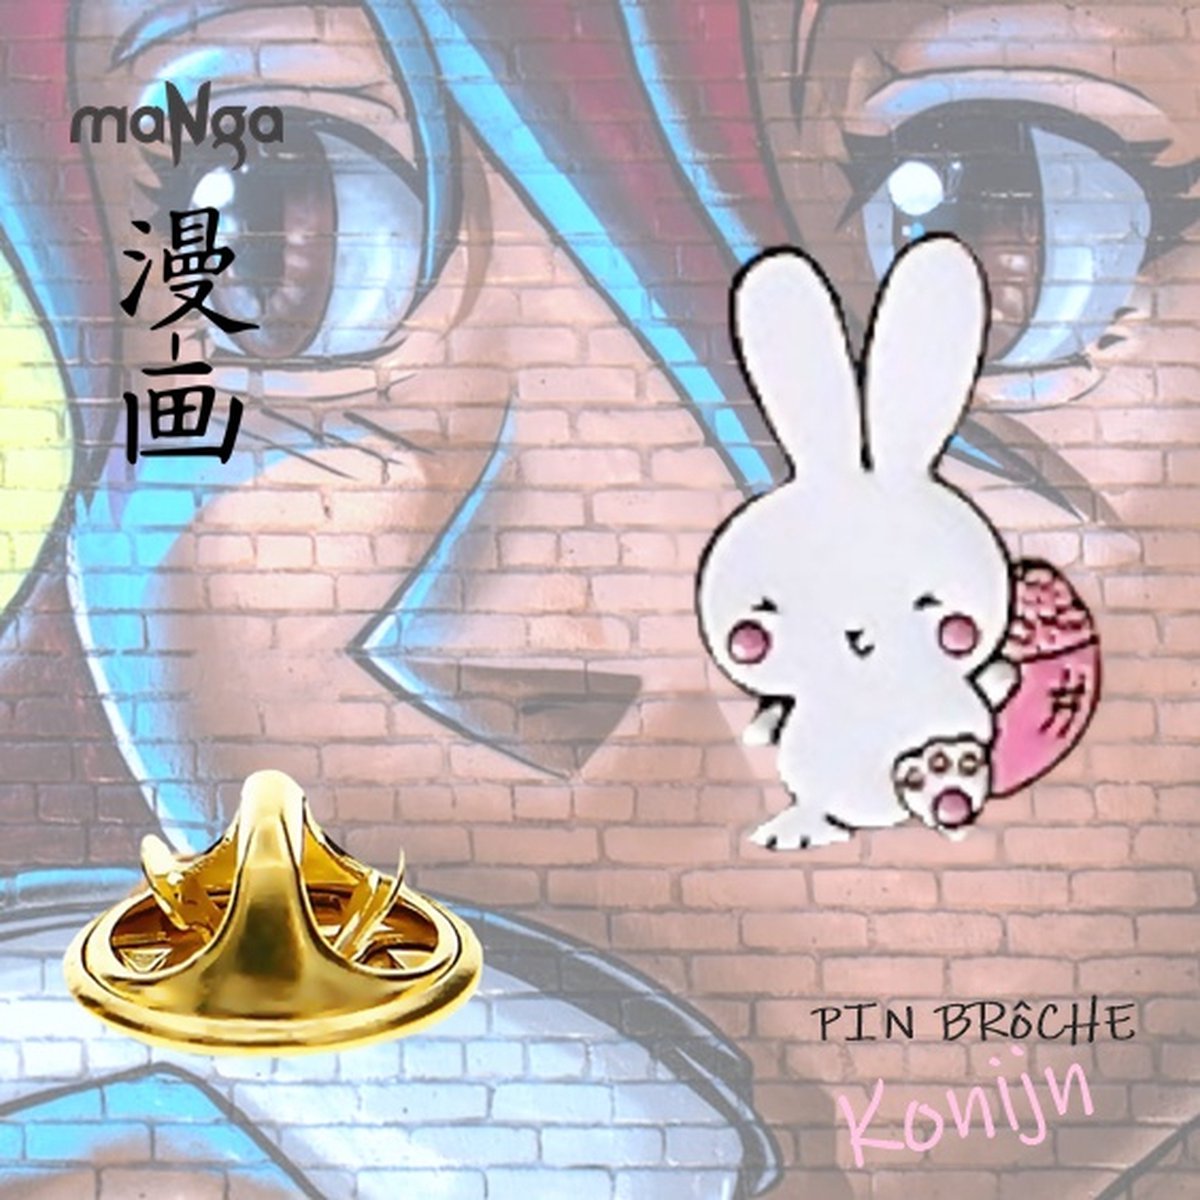 Pin Brôche met strip / animatie afbeelding - Licht Roze Wit - Konijntje - マンガアニメ - Manga Art Anime - 1,9 x 2,9 cm - KC Gold Look - Kinderen Tieners Volwassenen - Casual